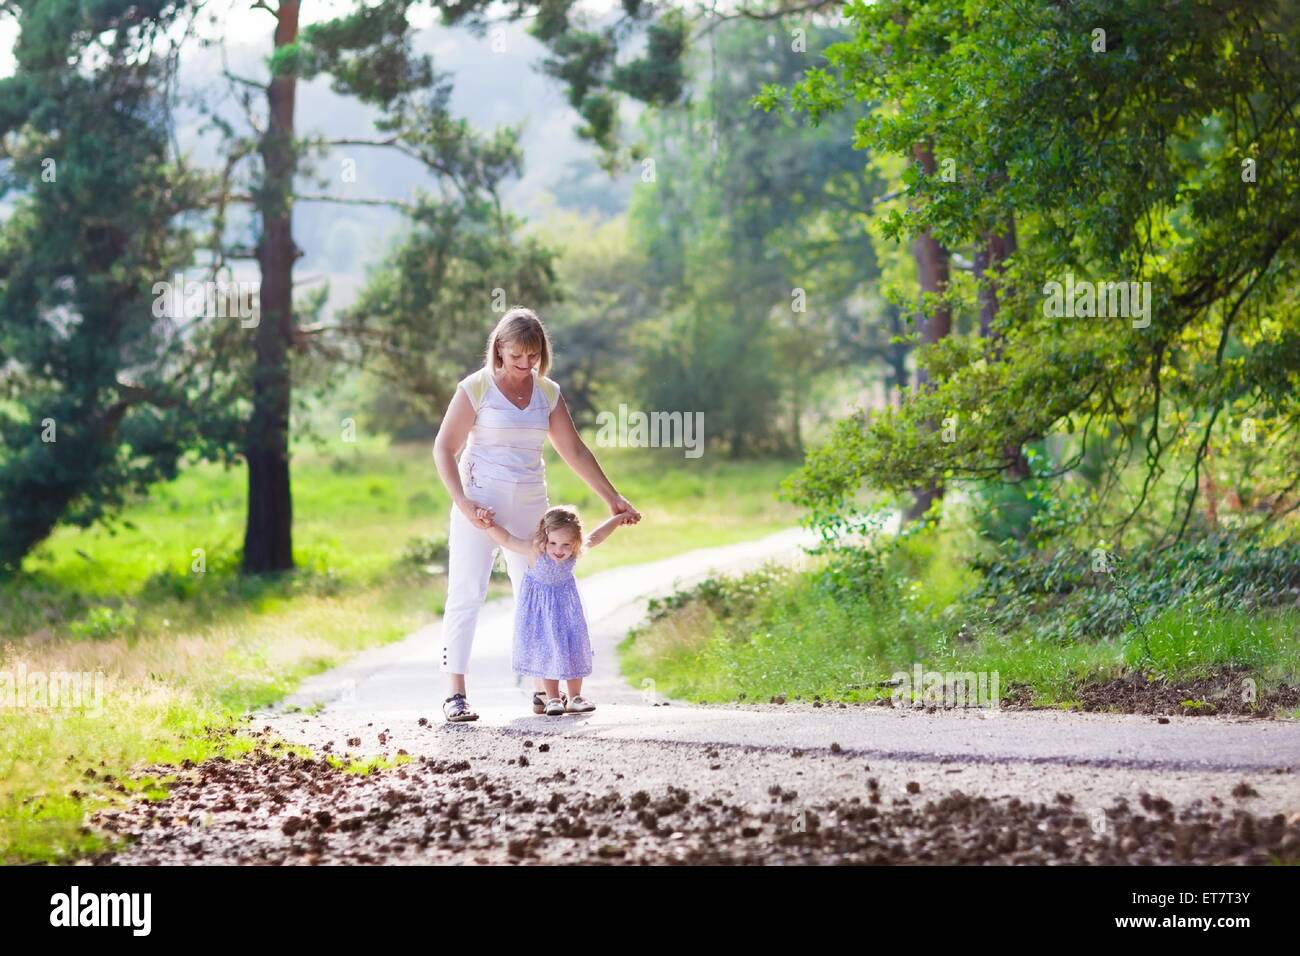 Glücklich aktive Frau spielt mit einem niedlichen kleinen Kind, liebenswert Kleinkind Mädchen in einem blauen Kleid, Spaß zusammen genießen Wandern Stockfoto